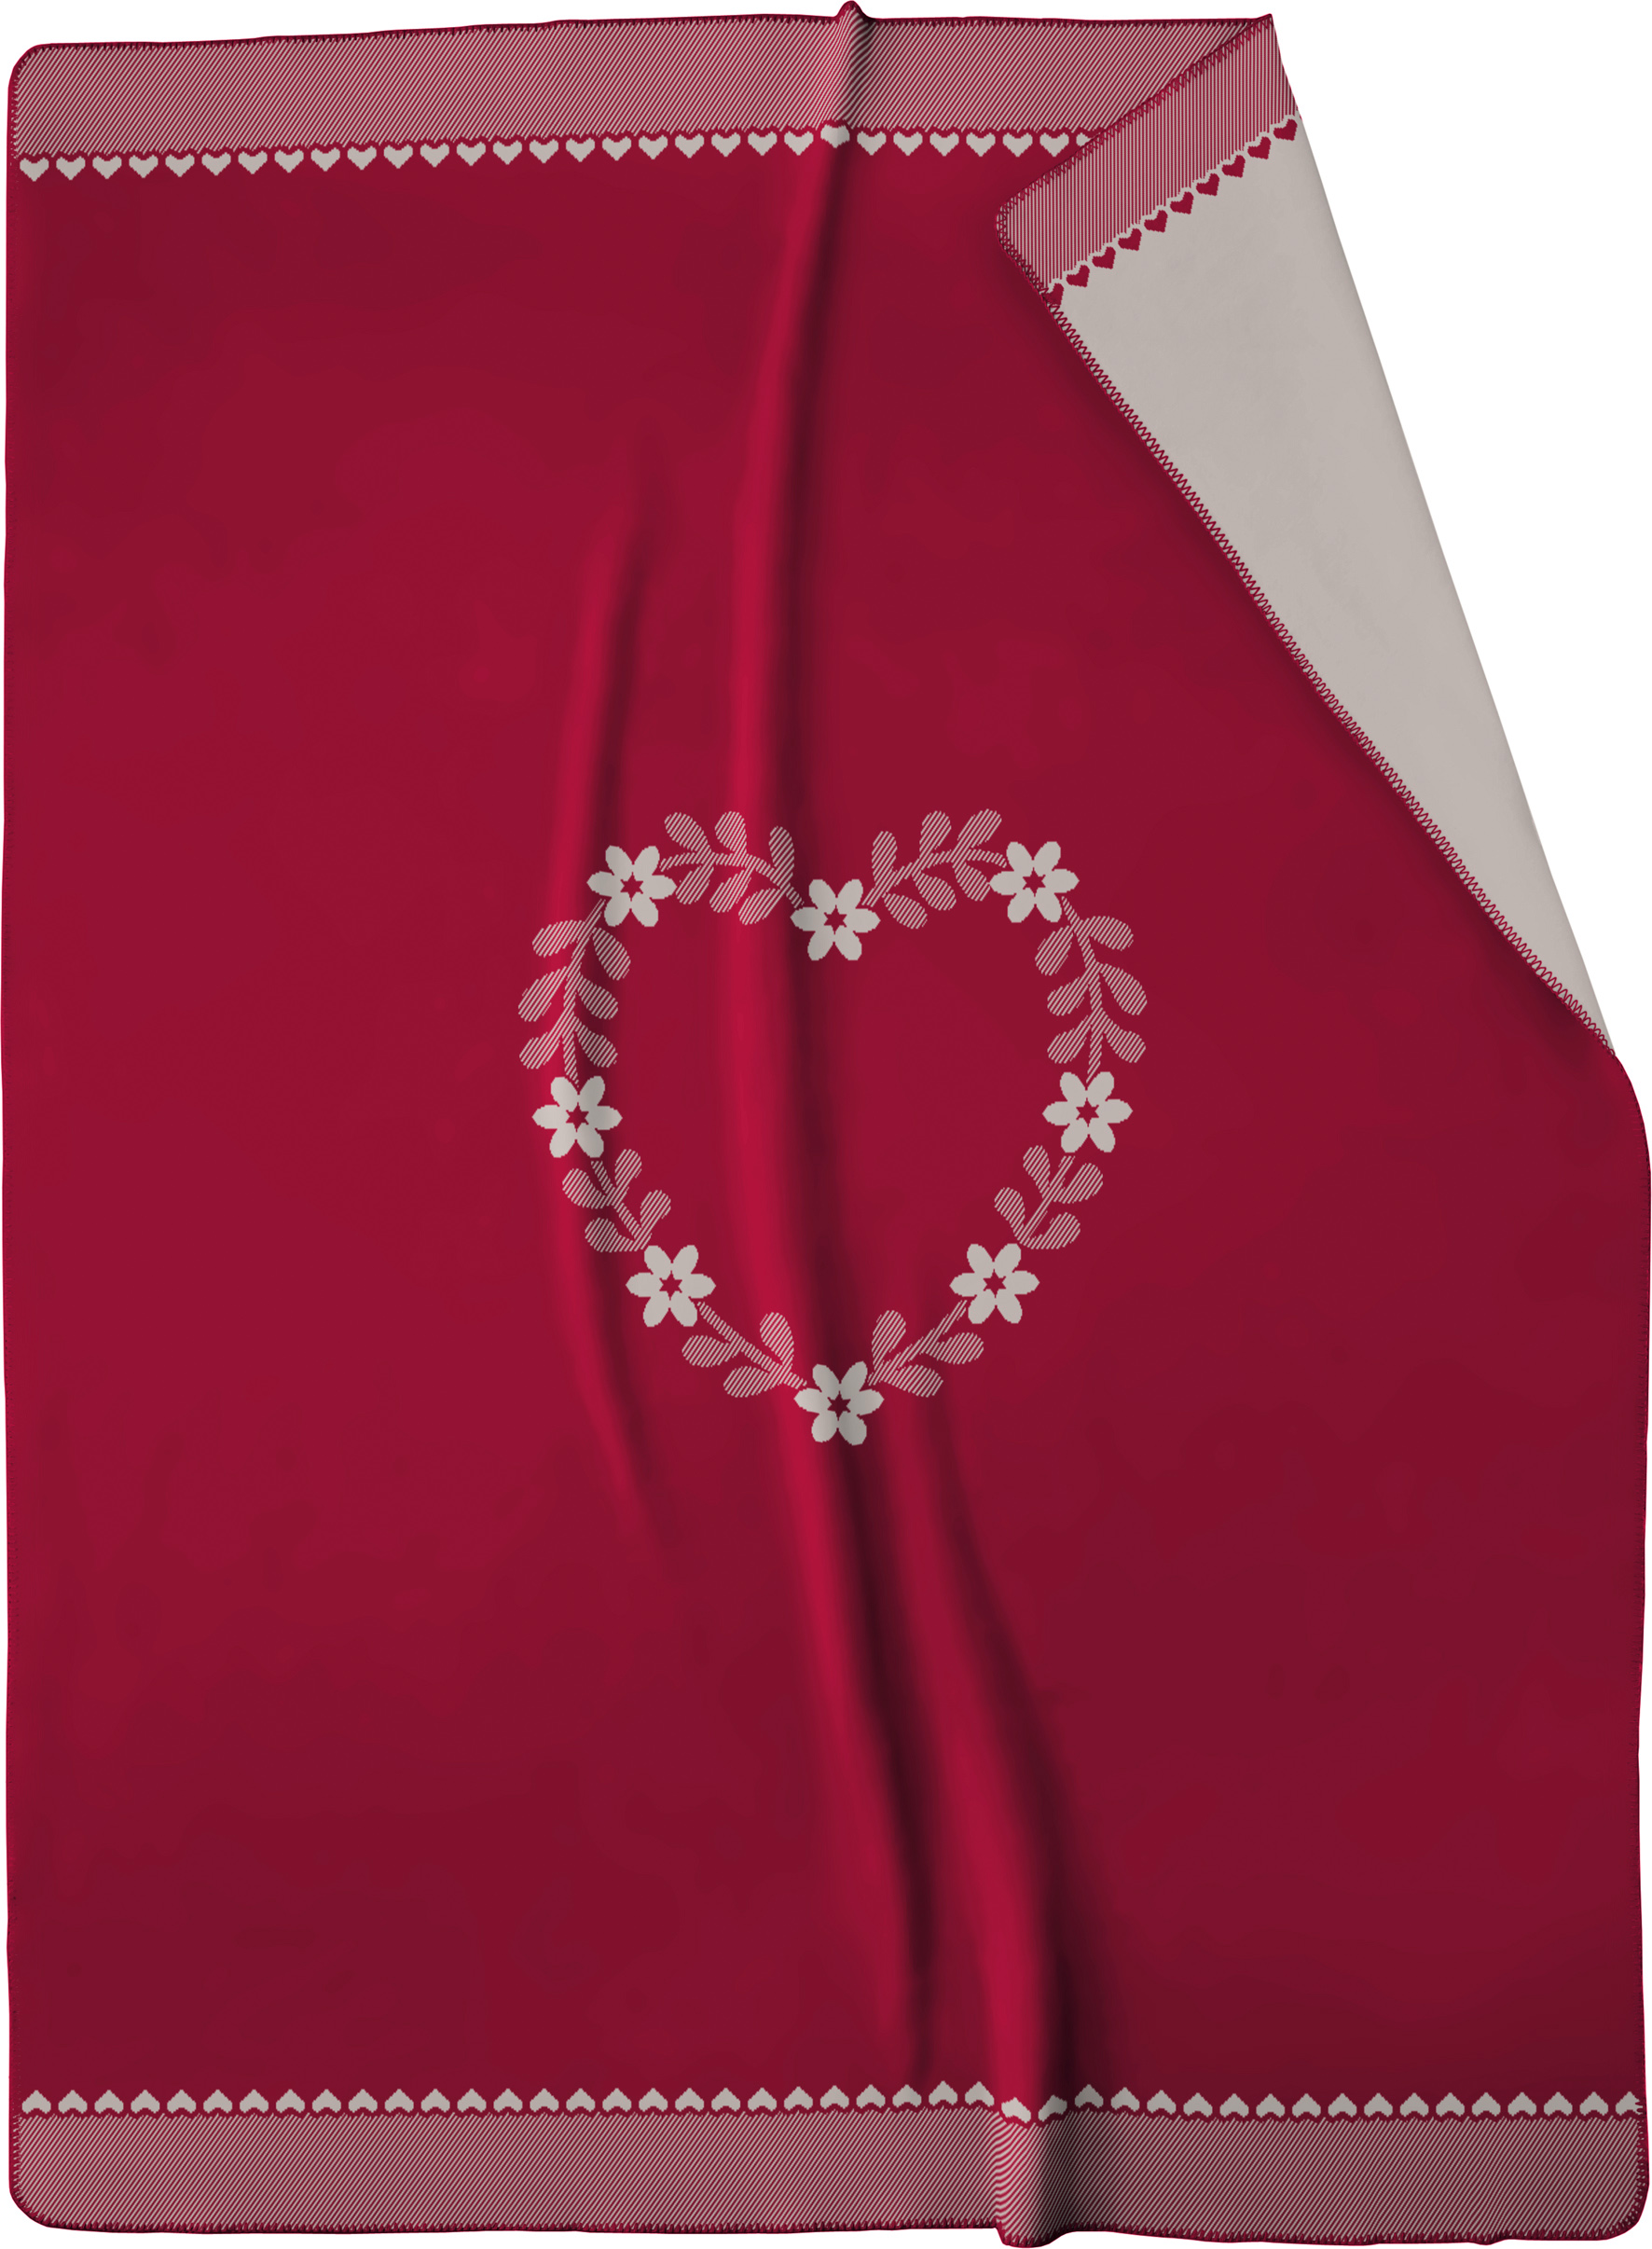 Winterliche Kuscheldecke mit Herz-Motiv in rot